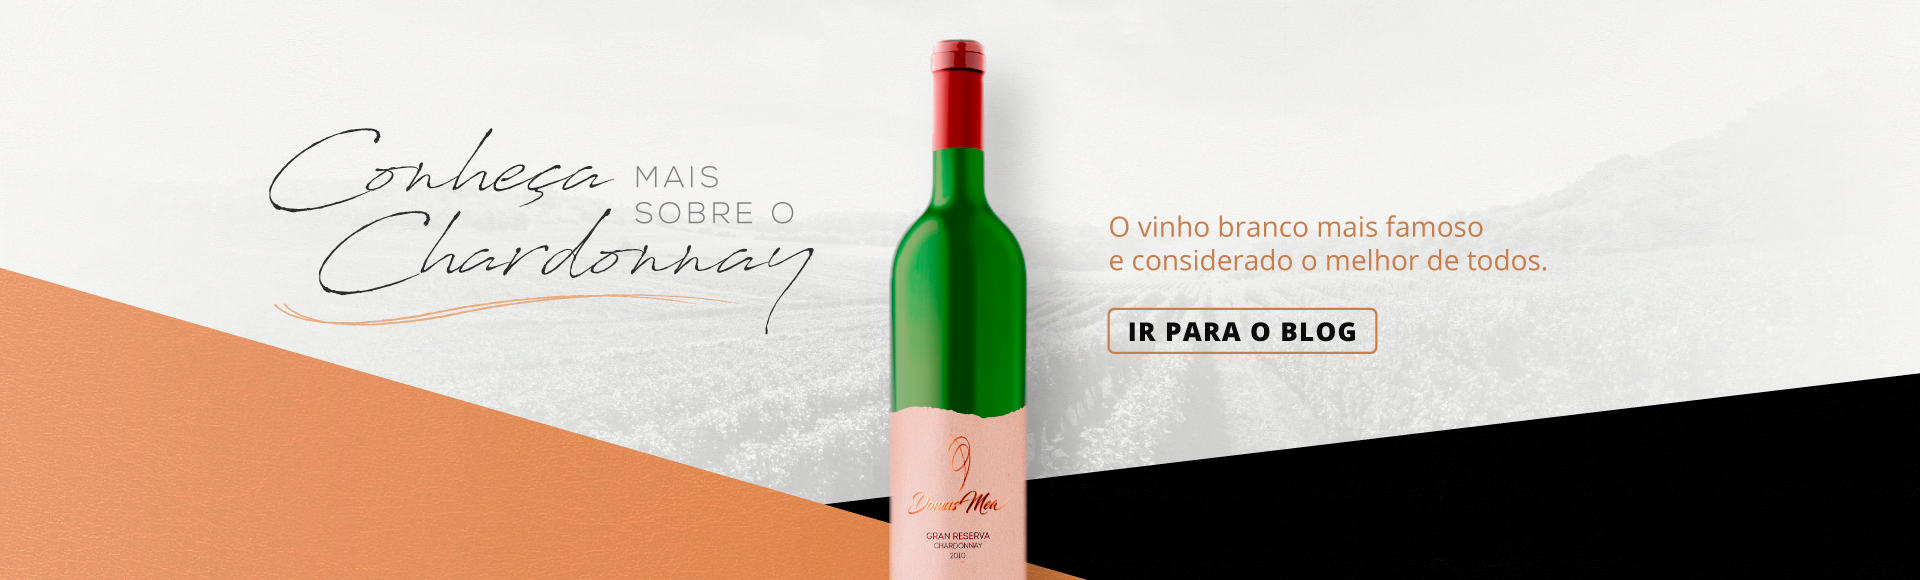 Conheça mais sobre o Chardonnay - Vinícola Domus Mea